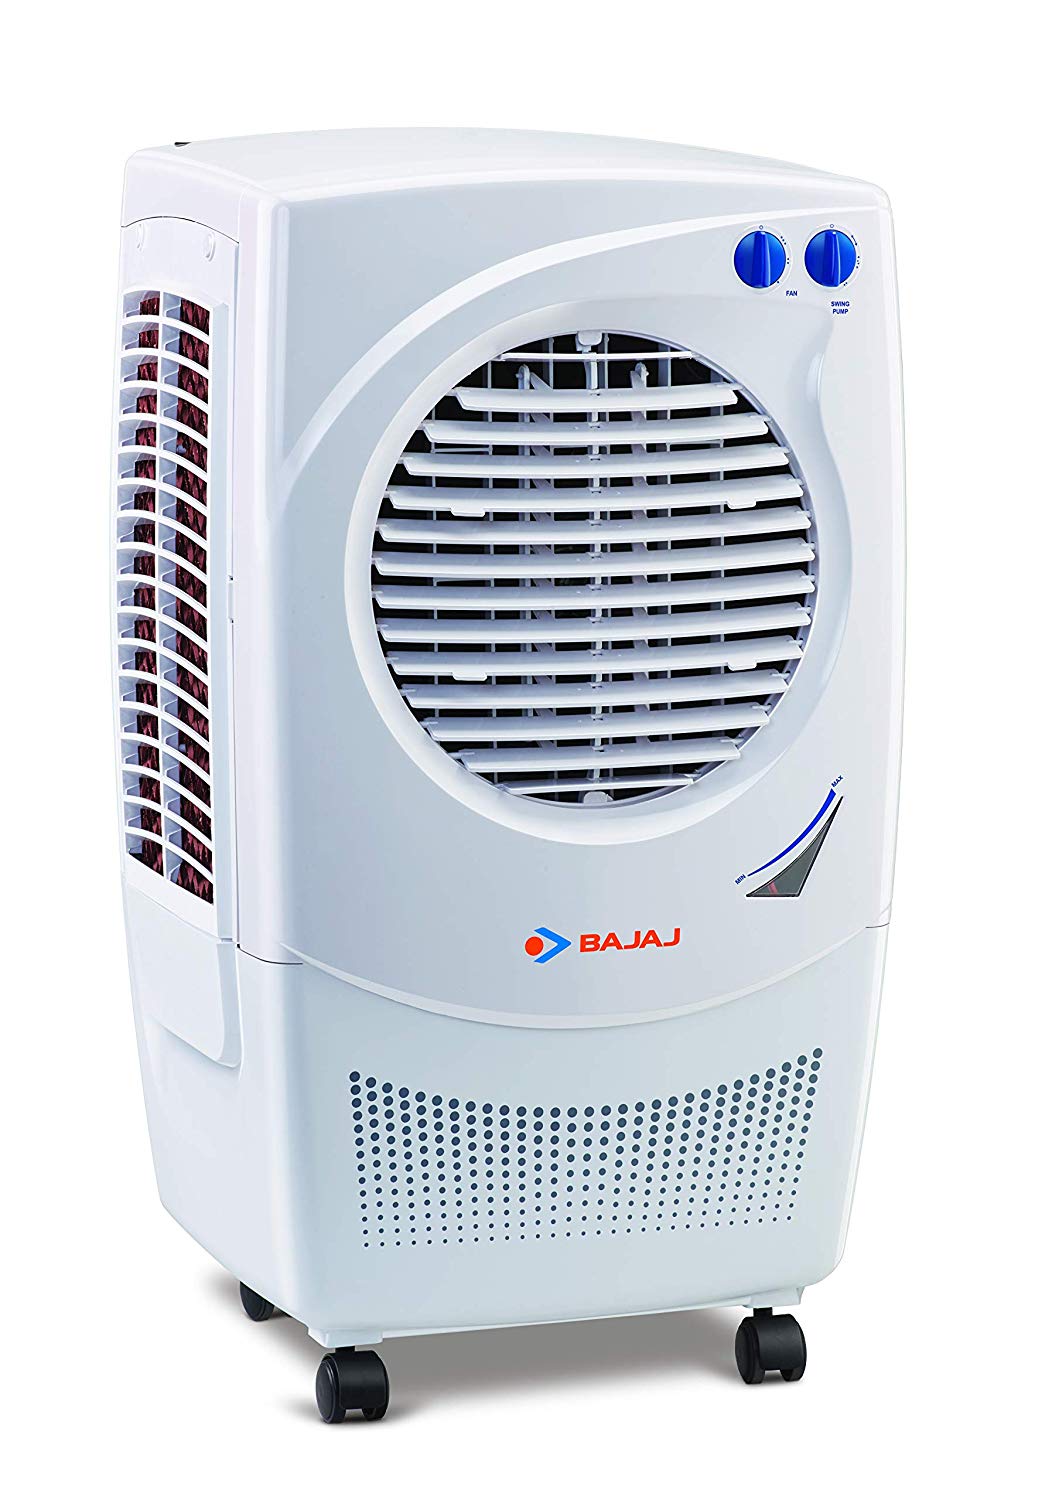 Bajaj Air Cooler Customer Service Number